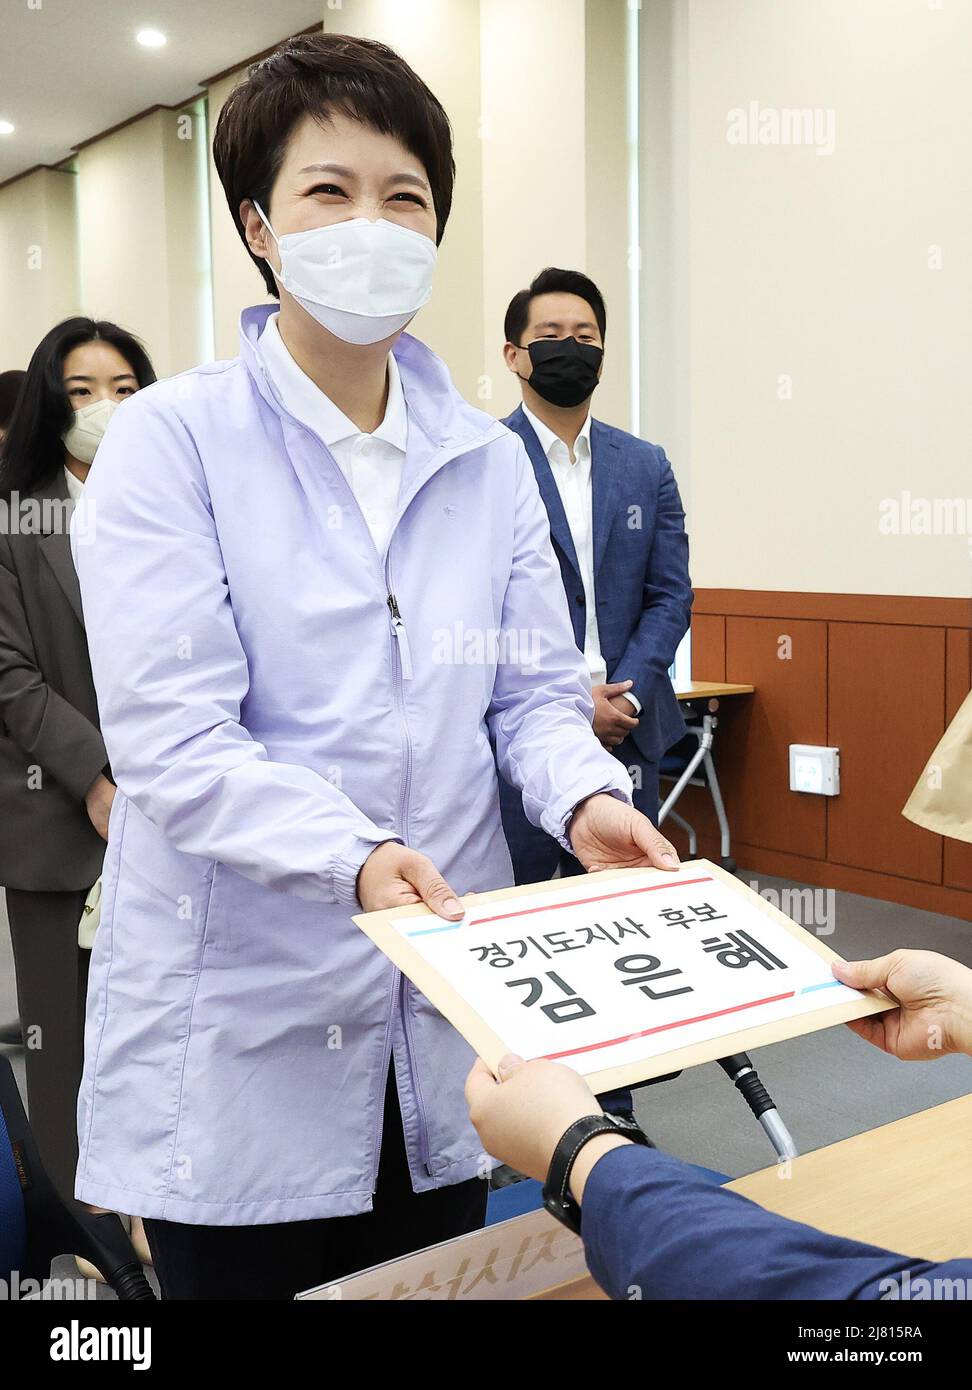 12th de mayo de 2022. Candidato a la carrera gubernatorial de Gyeonggi Kim Eun-hye, candidato del gobernante Partido del Poder Popular, registra su candidatura para la elección gubernatorial de Gyeonggi en una oficina de la Comisión Nacional Electoral en Suwon, la capital de la provincia de Gyeonggi, el 12 de mayo de 2022. La elección se llevará a cabo como parte de las elecciones locales del 1 de junio para elegir alcaldes, gobernadores y superintendentes de educación. Crédito: Yonhap/Newcom/Alamy Live News Foto de stock